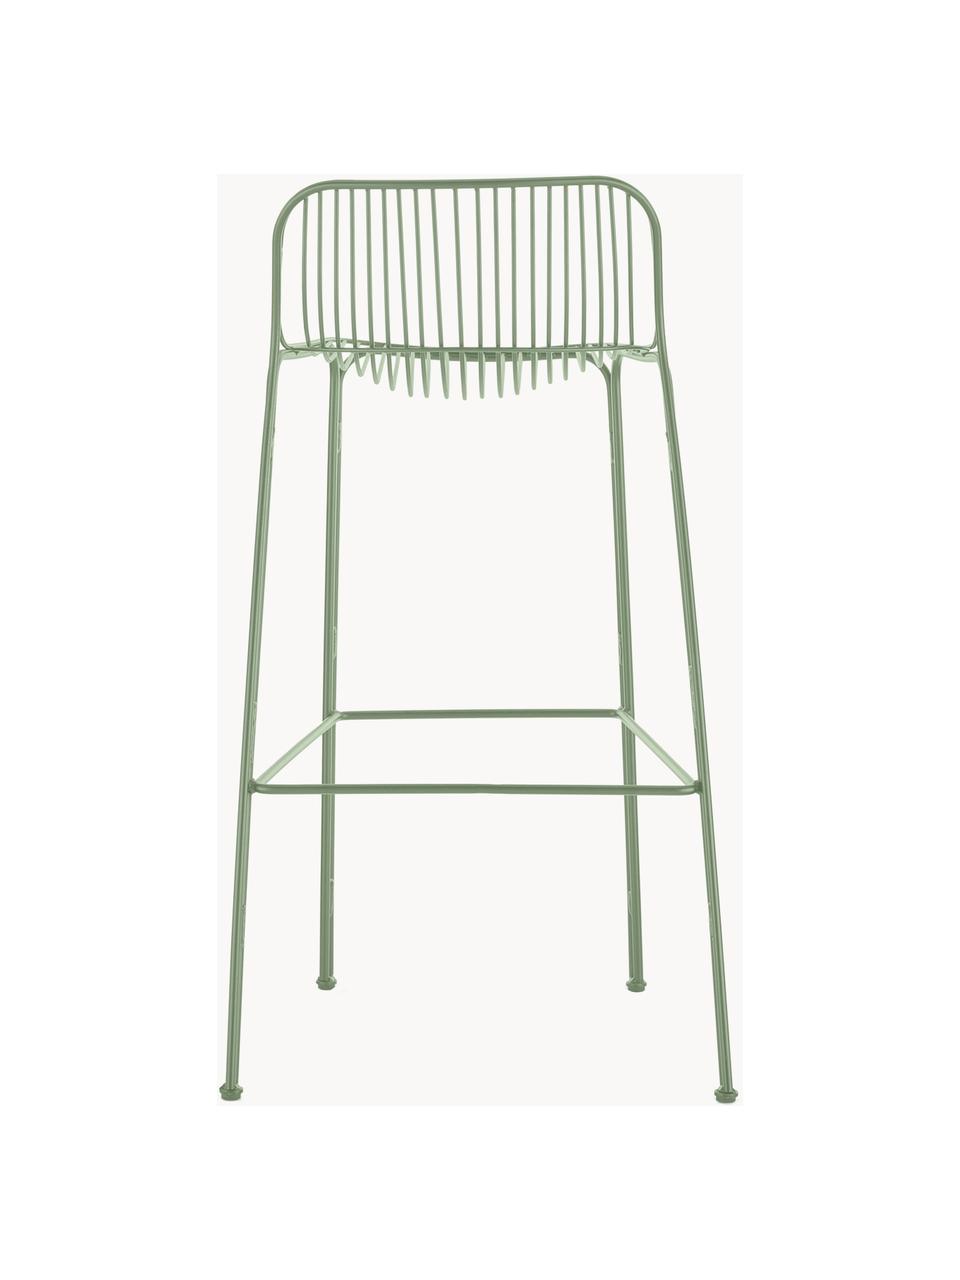 Ogrodowe krzesło barowe Hiray, Stal ocynkowana, lakierowana, Szałwiowy zielony, S 57 x W 96 cm